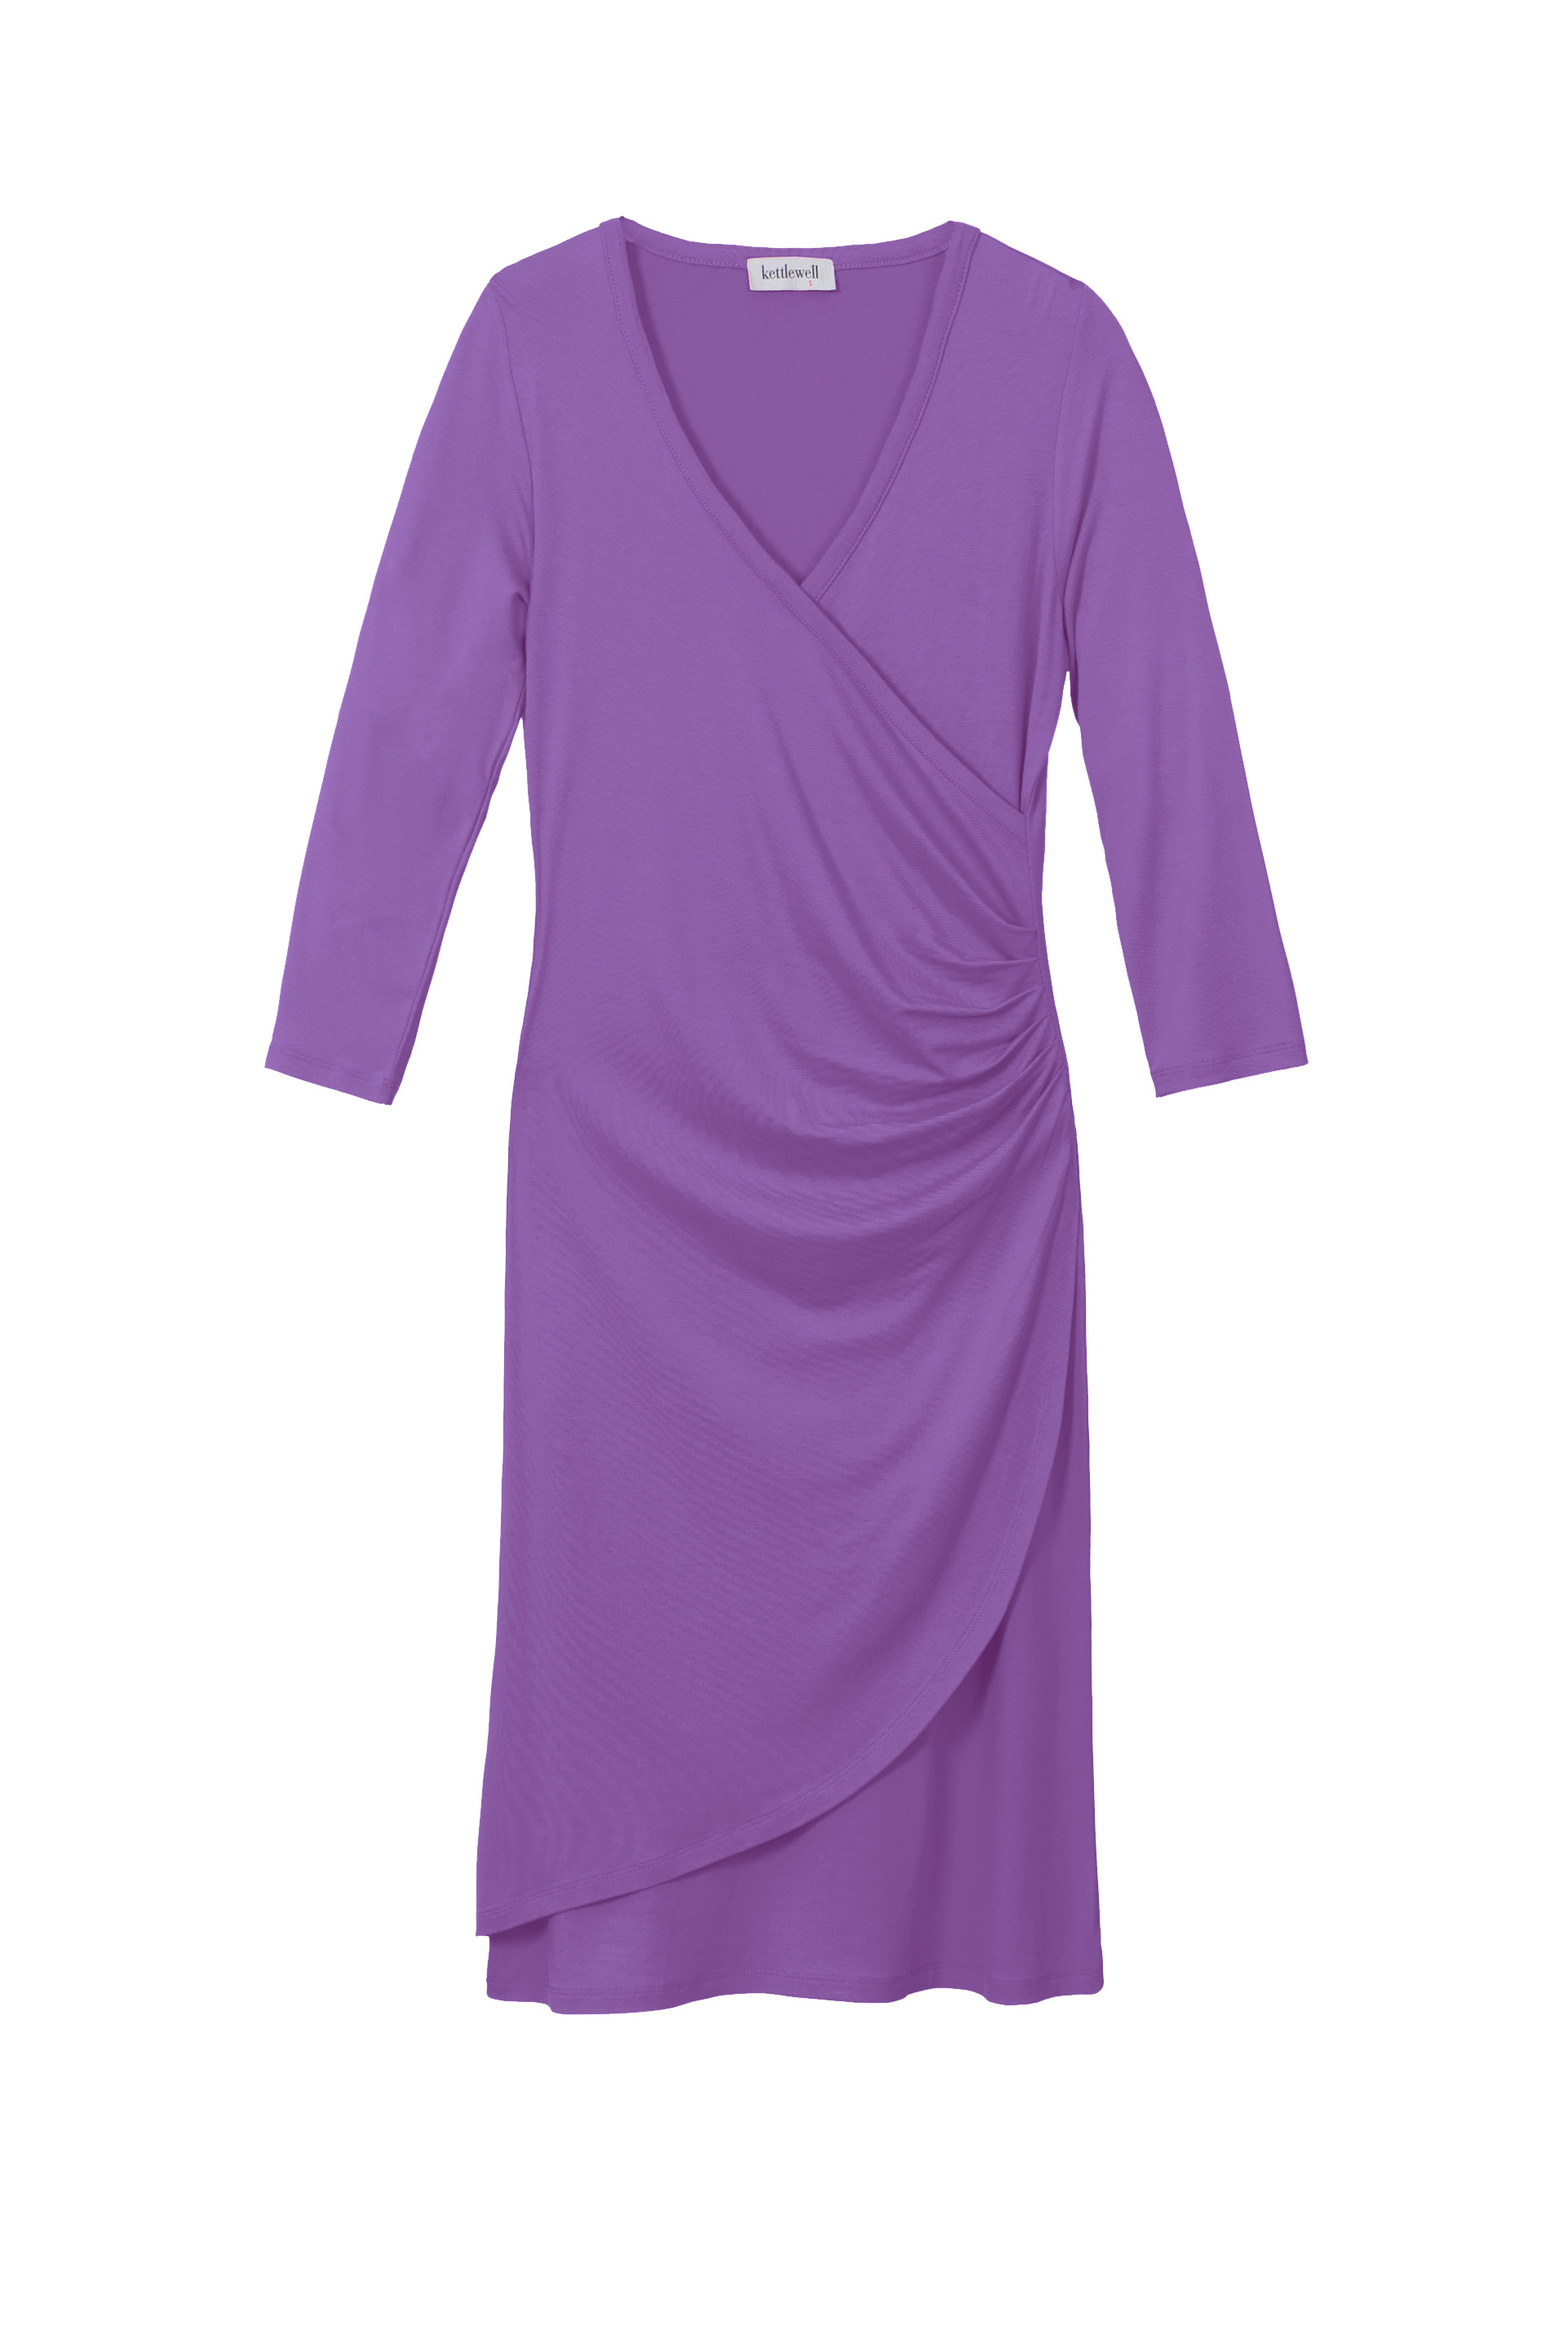 7346_arabella_dress_3.4_sleeve_violet.jpg